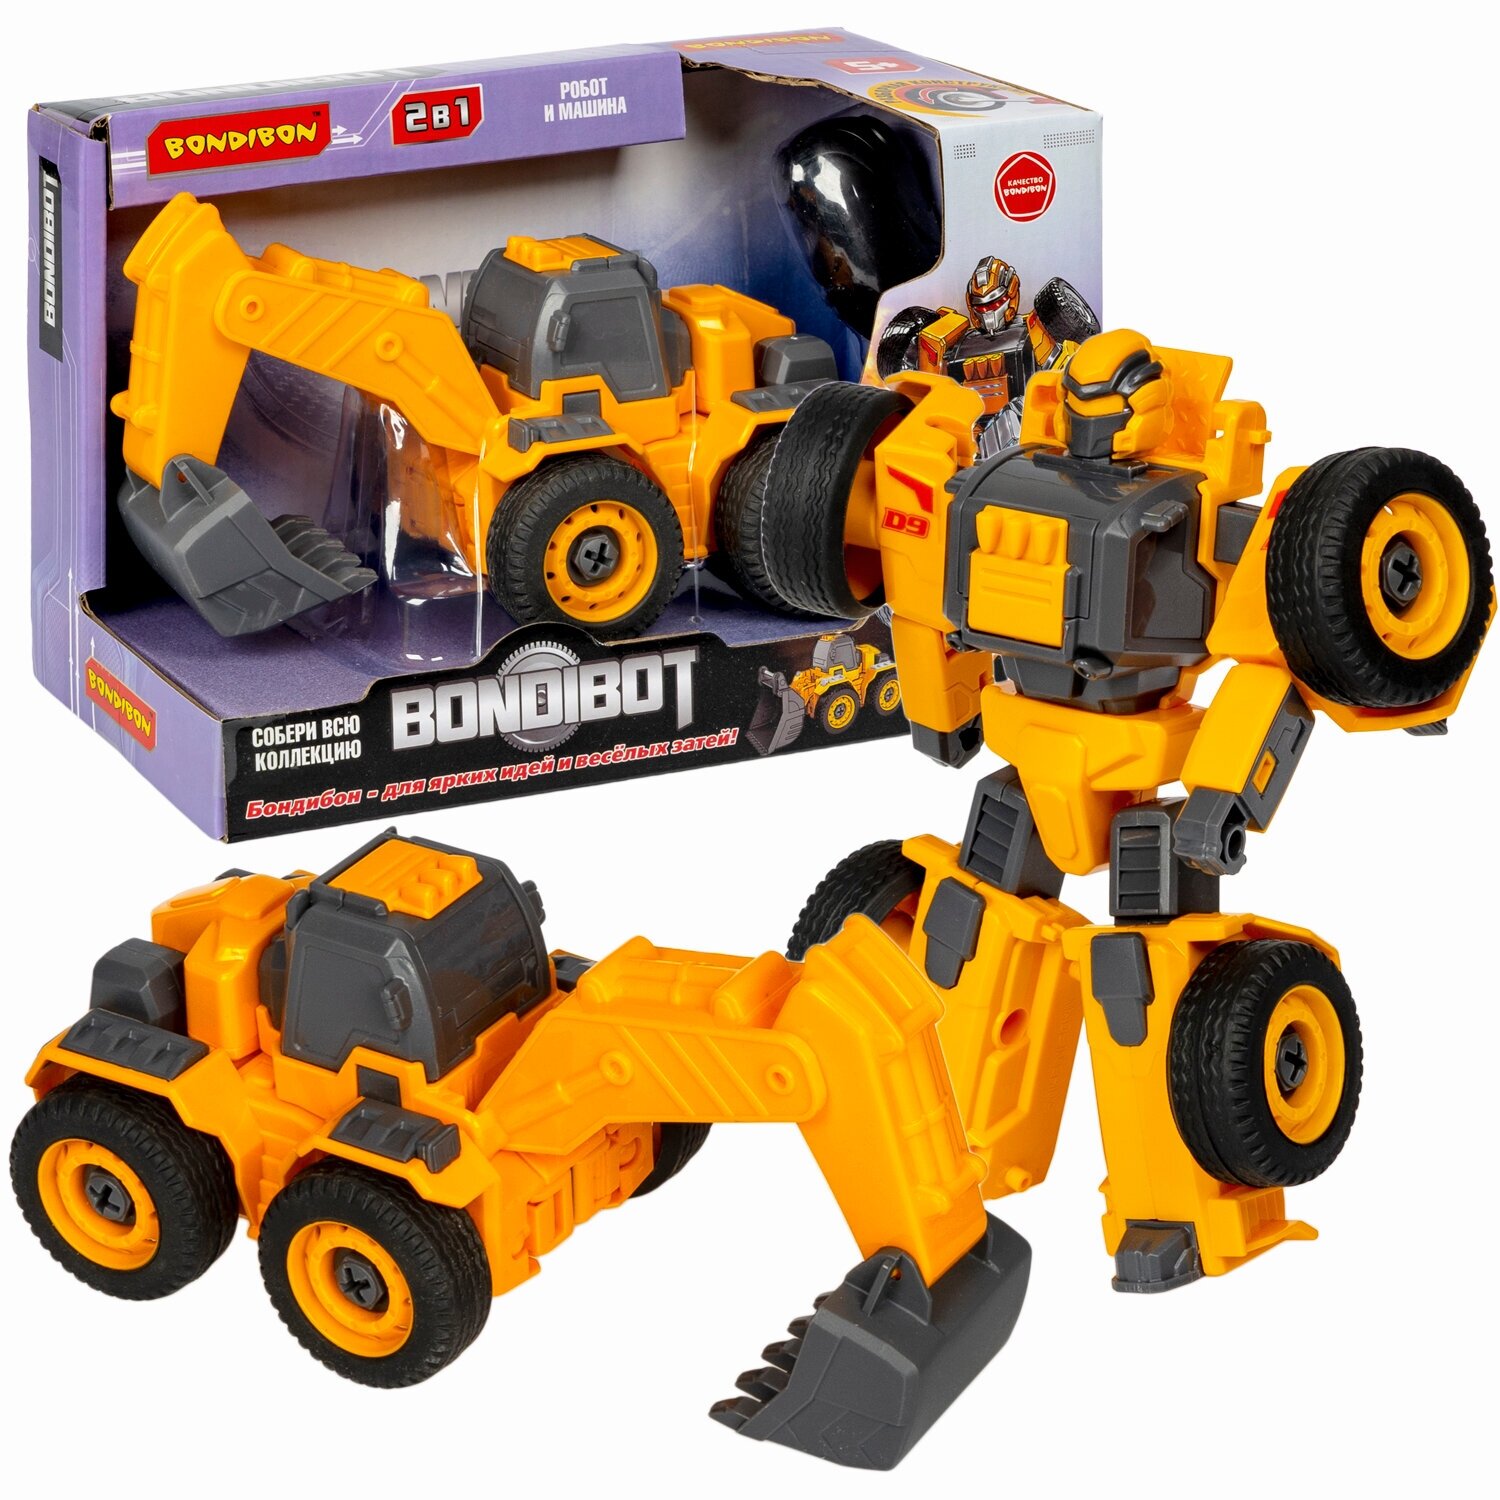 Детский игровой трансформер-конструктор с отвёрткой BONDIBOT 2в1 / Трактор экскаватор с ковшом, робот для детей Bondibon